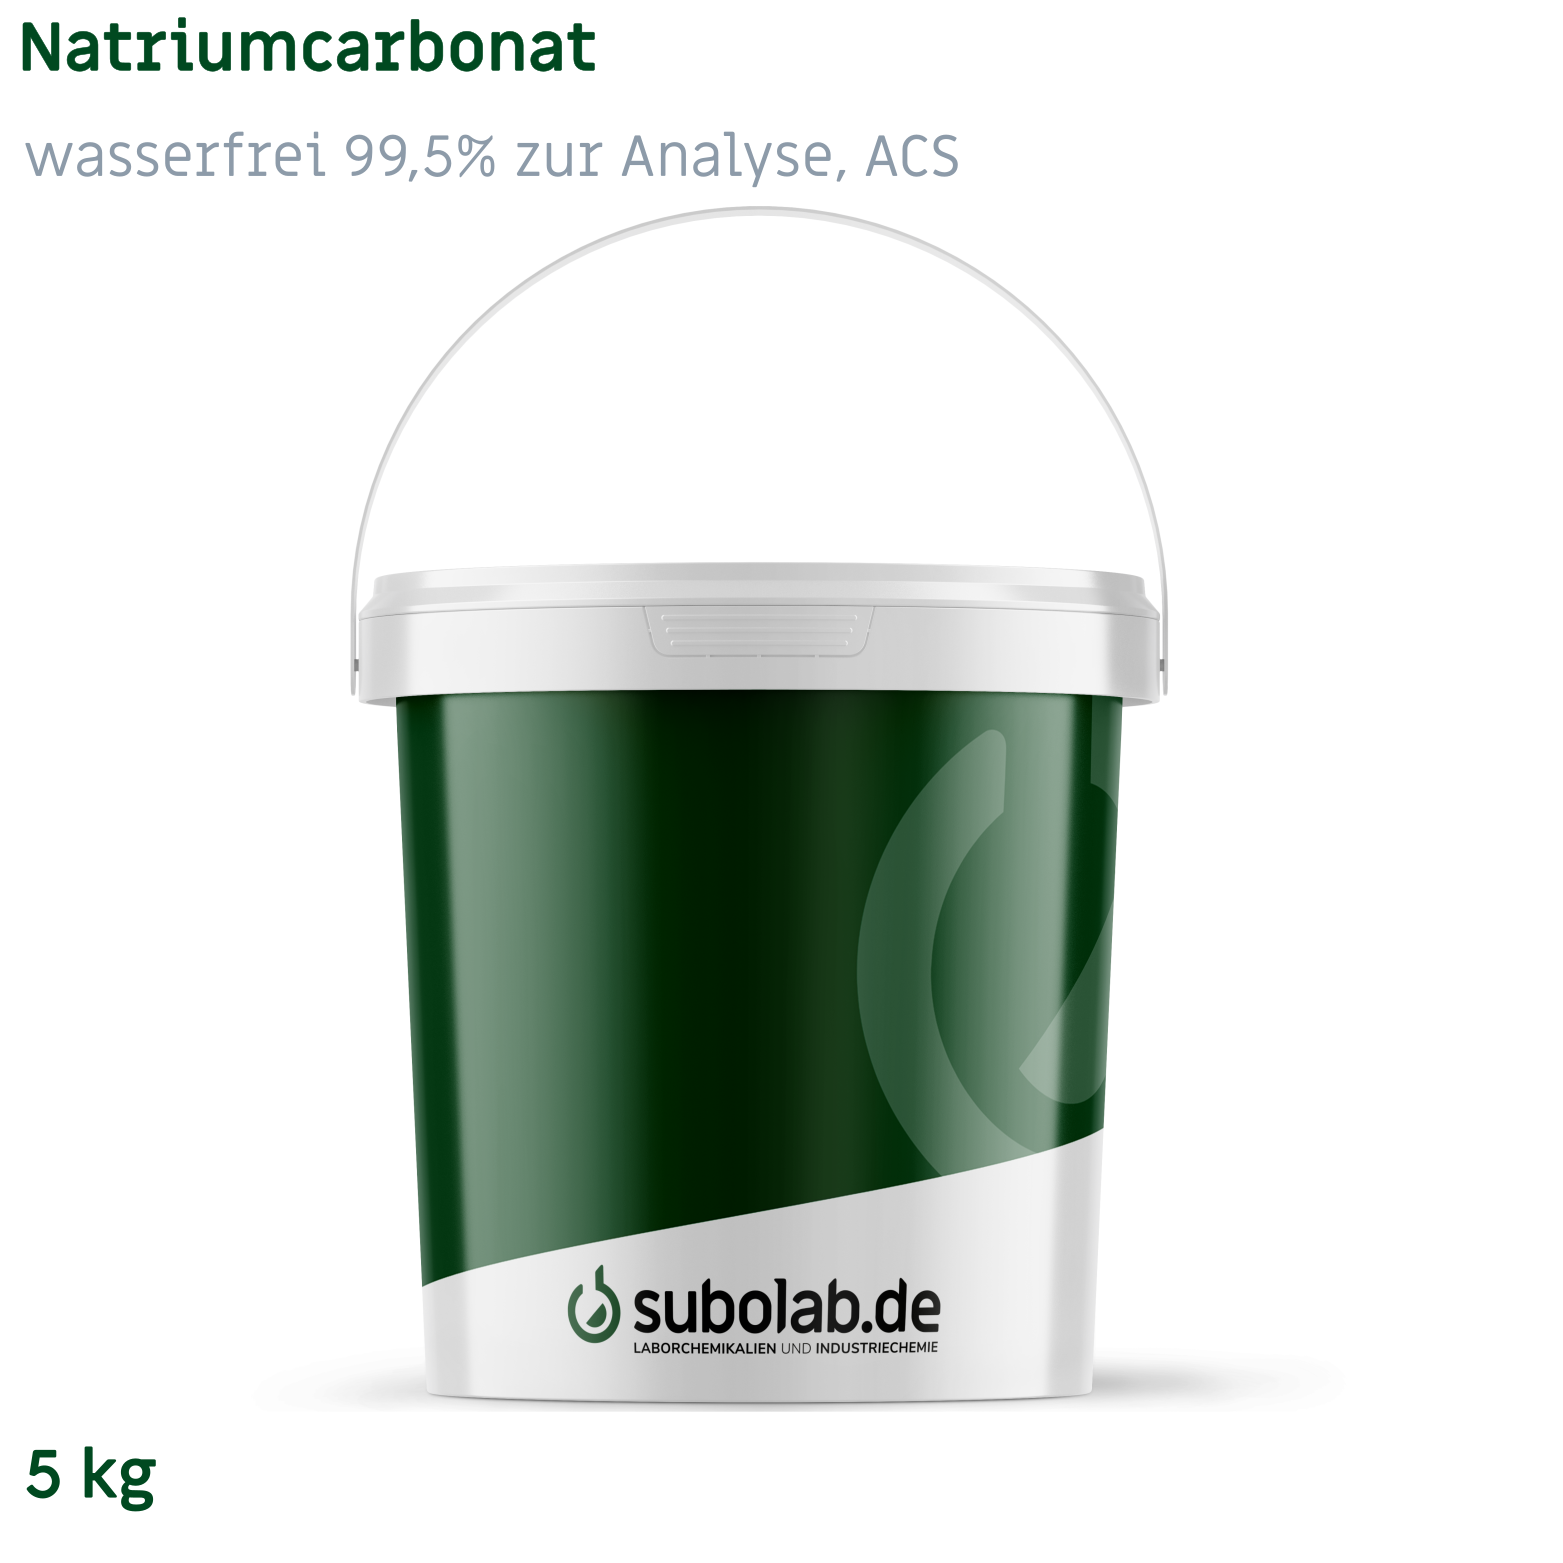 Bild von Natriumcarbonat - wasserfrei 99,5% zur Analyse, ACS (5 kg)